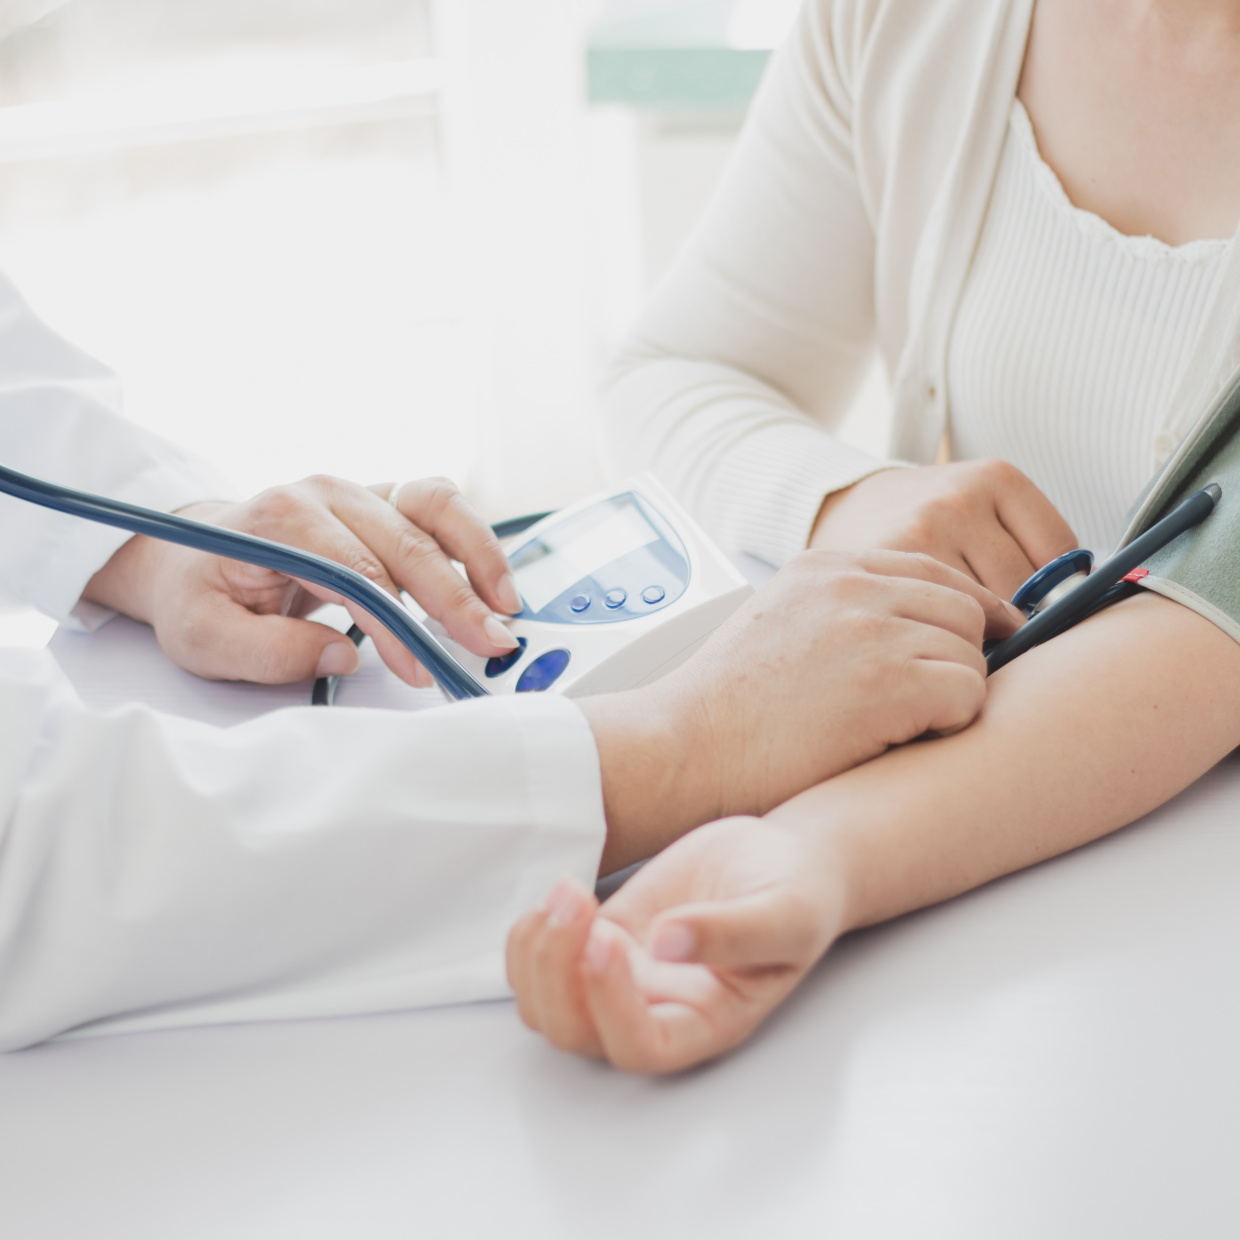 症状が現れにくい高血圧。40代女性が気をつけたい「高血圧のサイン」と「改善策」